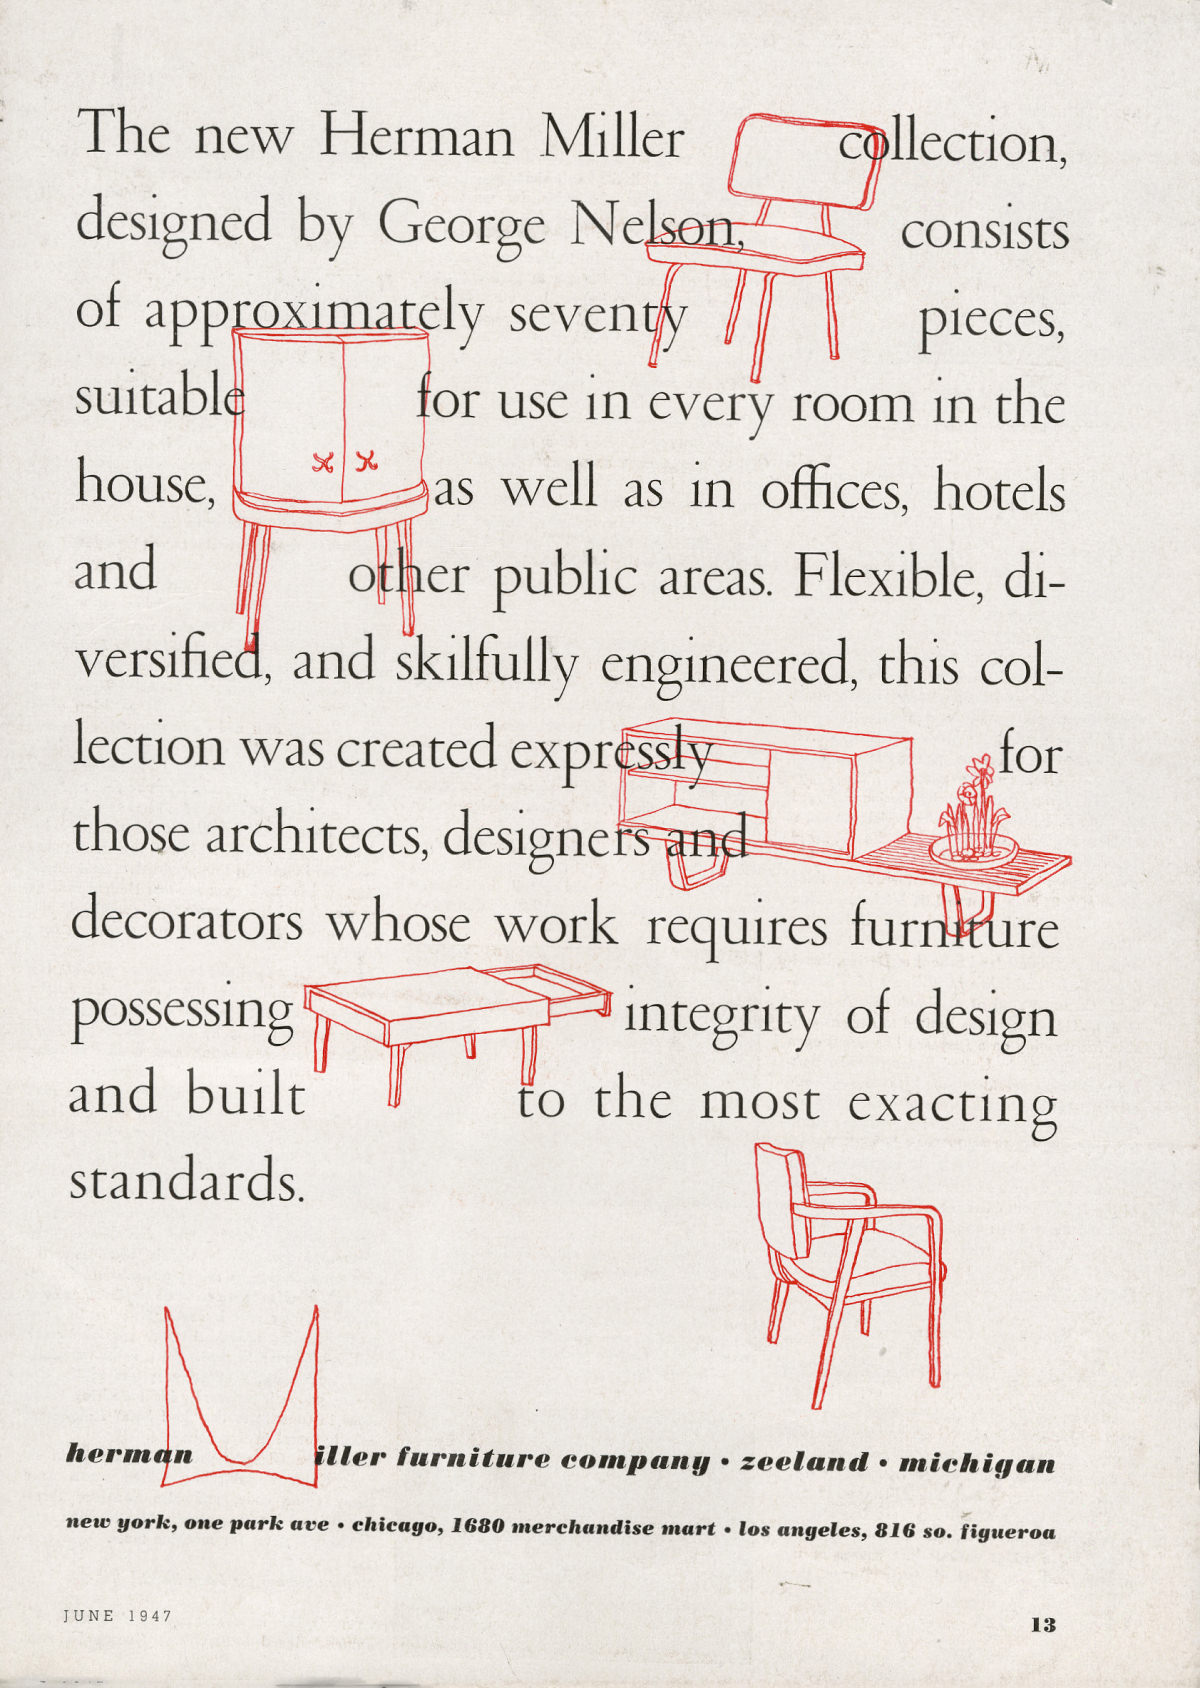 Ilustraciones de piezas de mobiliario, entre ellas, artículos de la serie de gabinetes básicos, que se entremezclan con un texto promocional que describe la primera colección de George Nelson para Herman Miller.